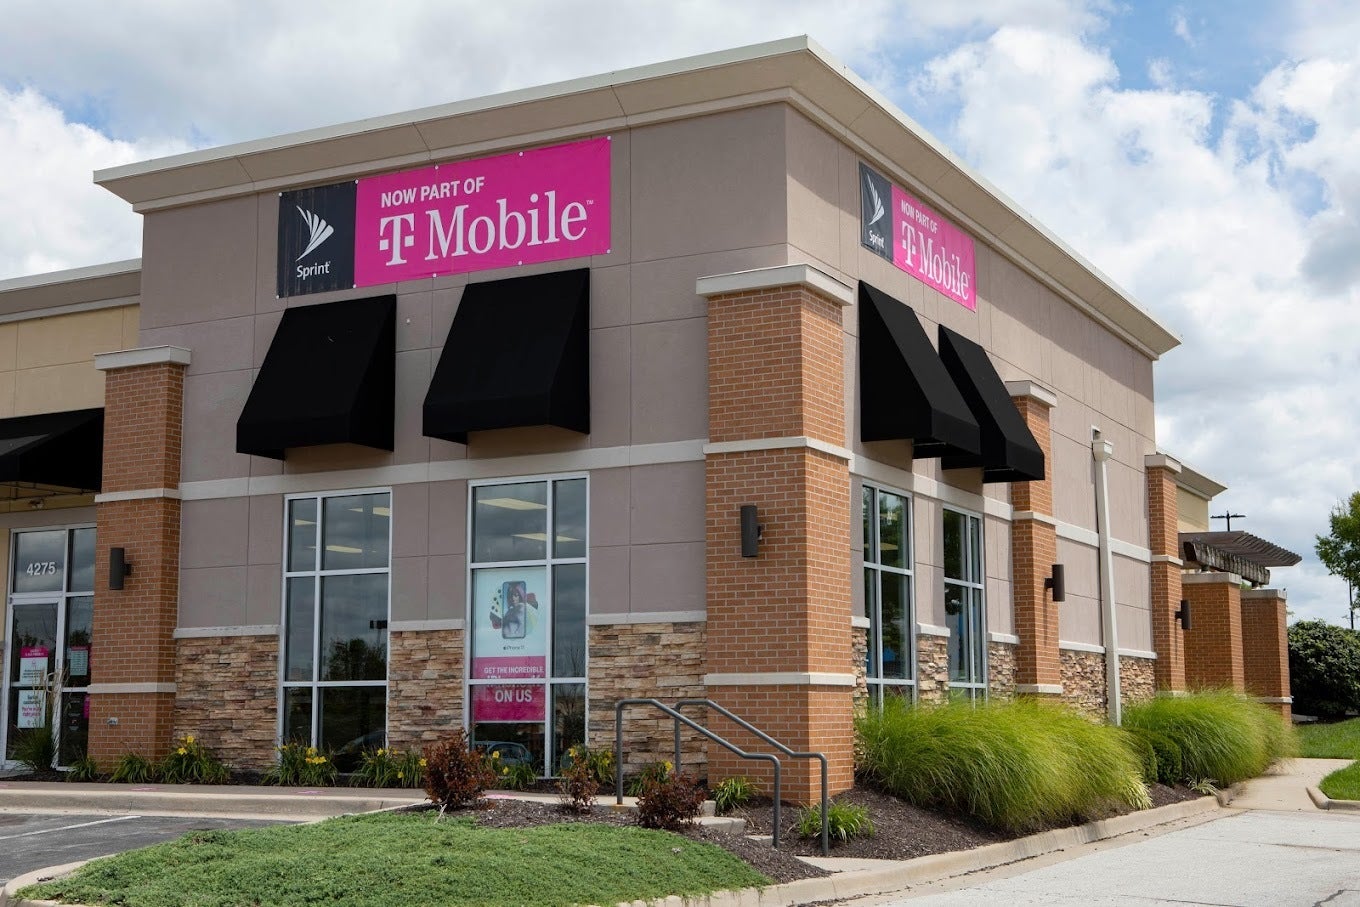 Wireless Vision'a ait T-Mobile yetkili perakende satış noktası - T-Mobile, tazminatta ciddi değişiklikler yaparak bayileri kızdırıyor